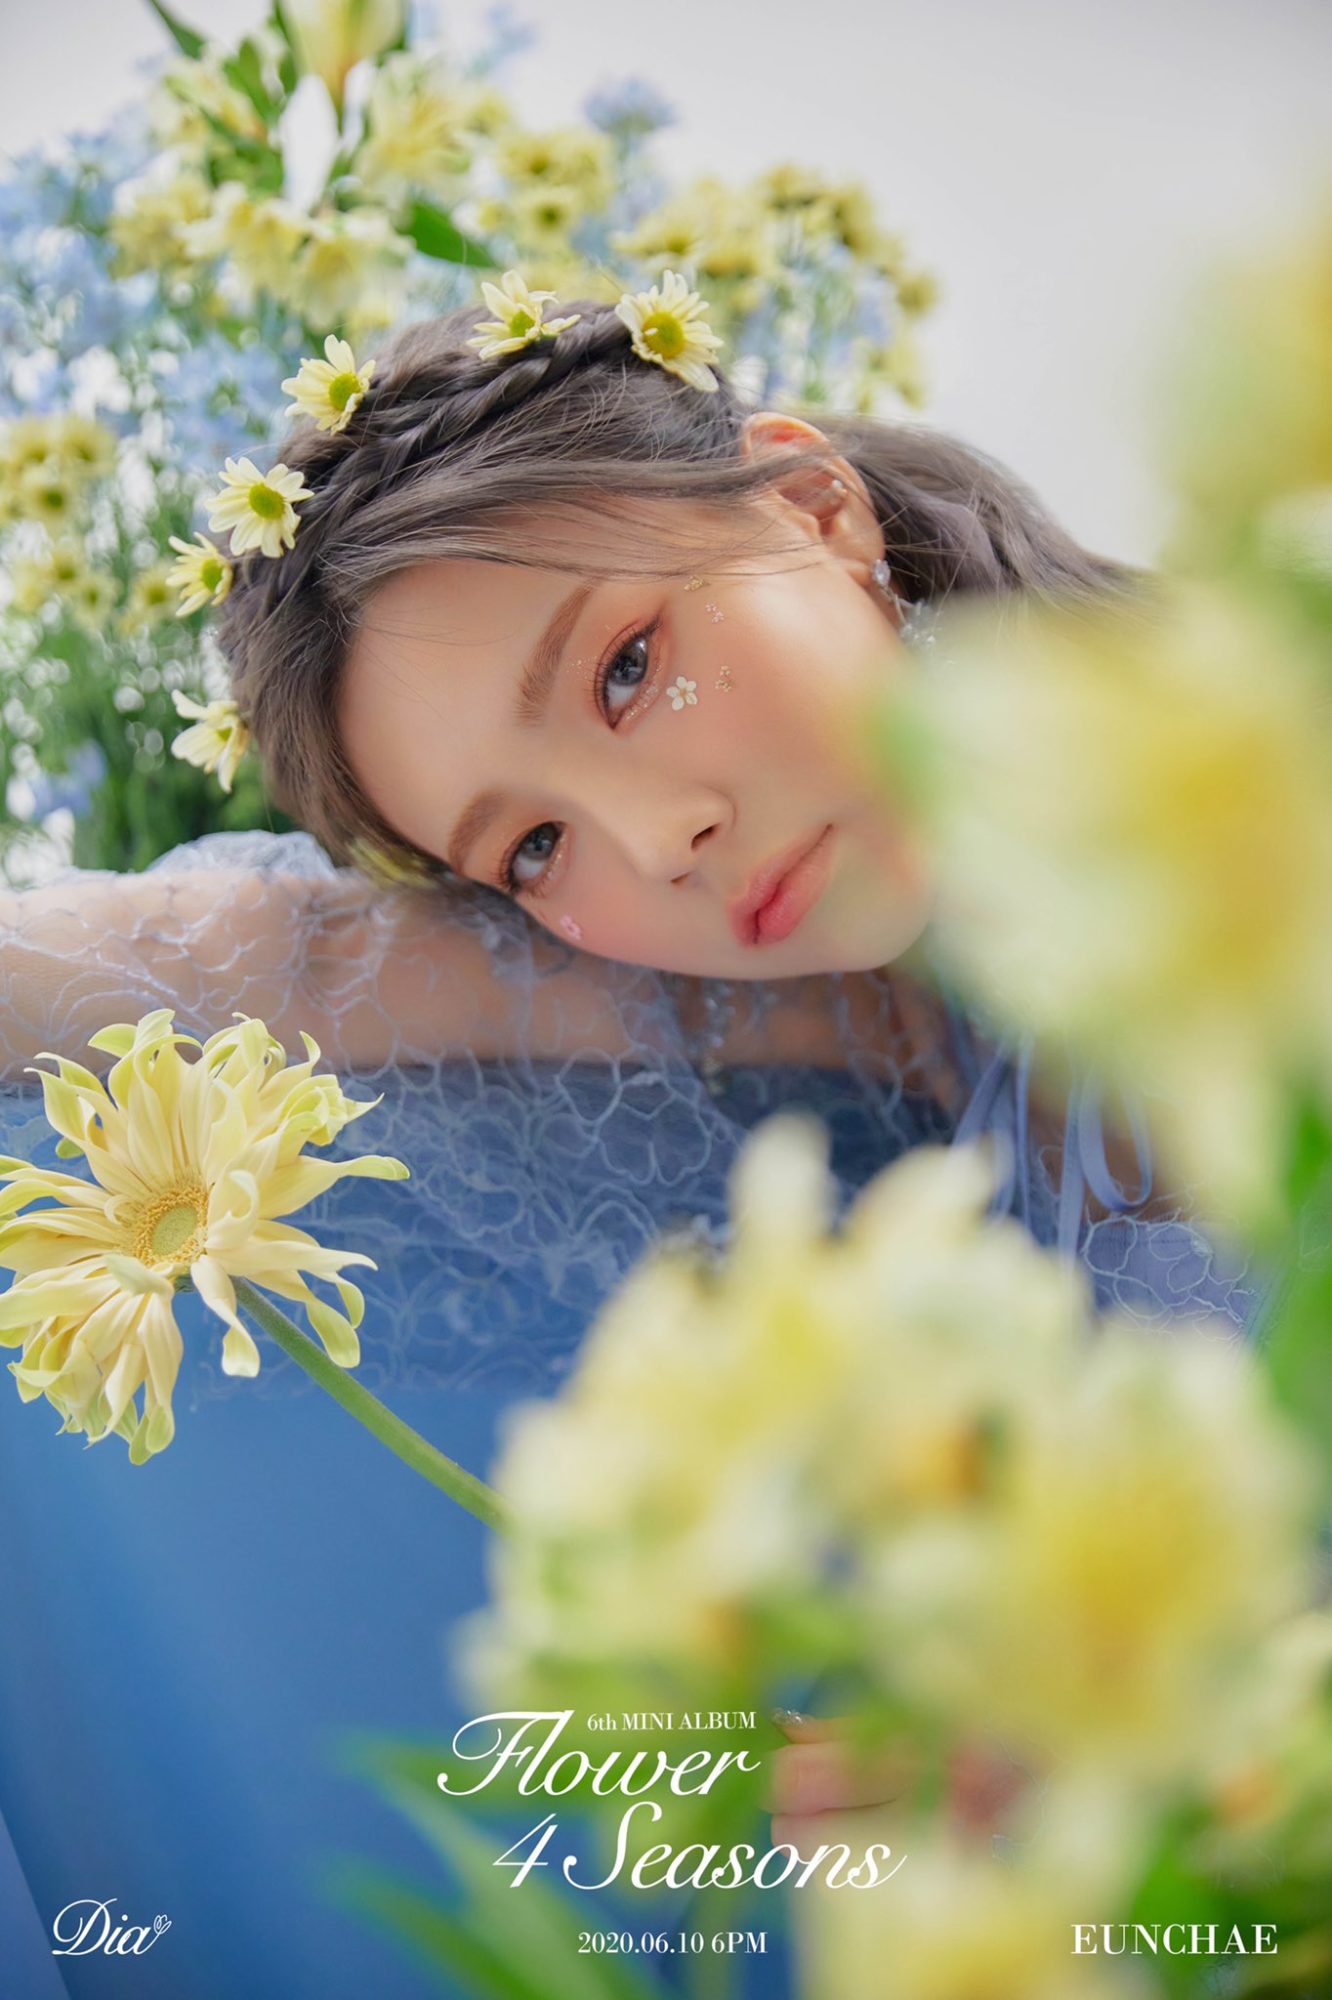 DIA Flower 4 Seasons Eunchae Teaser